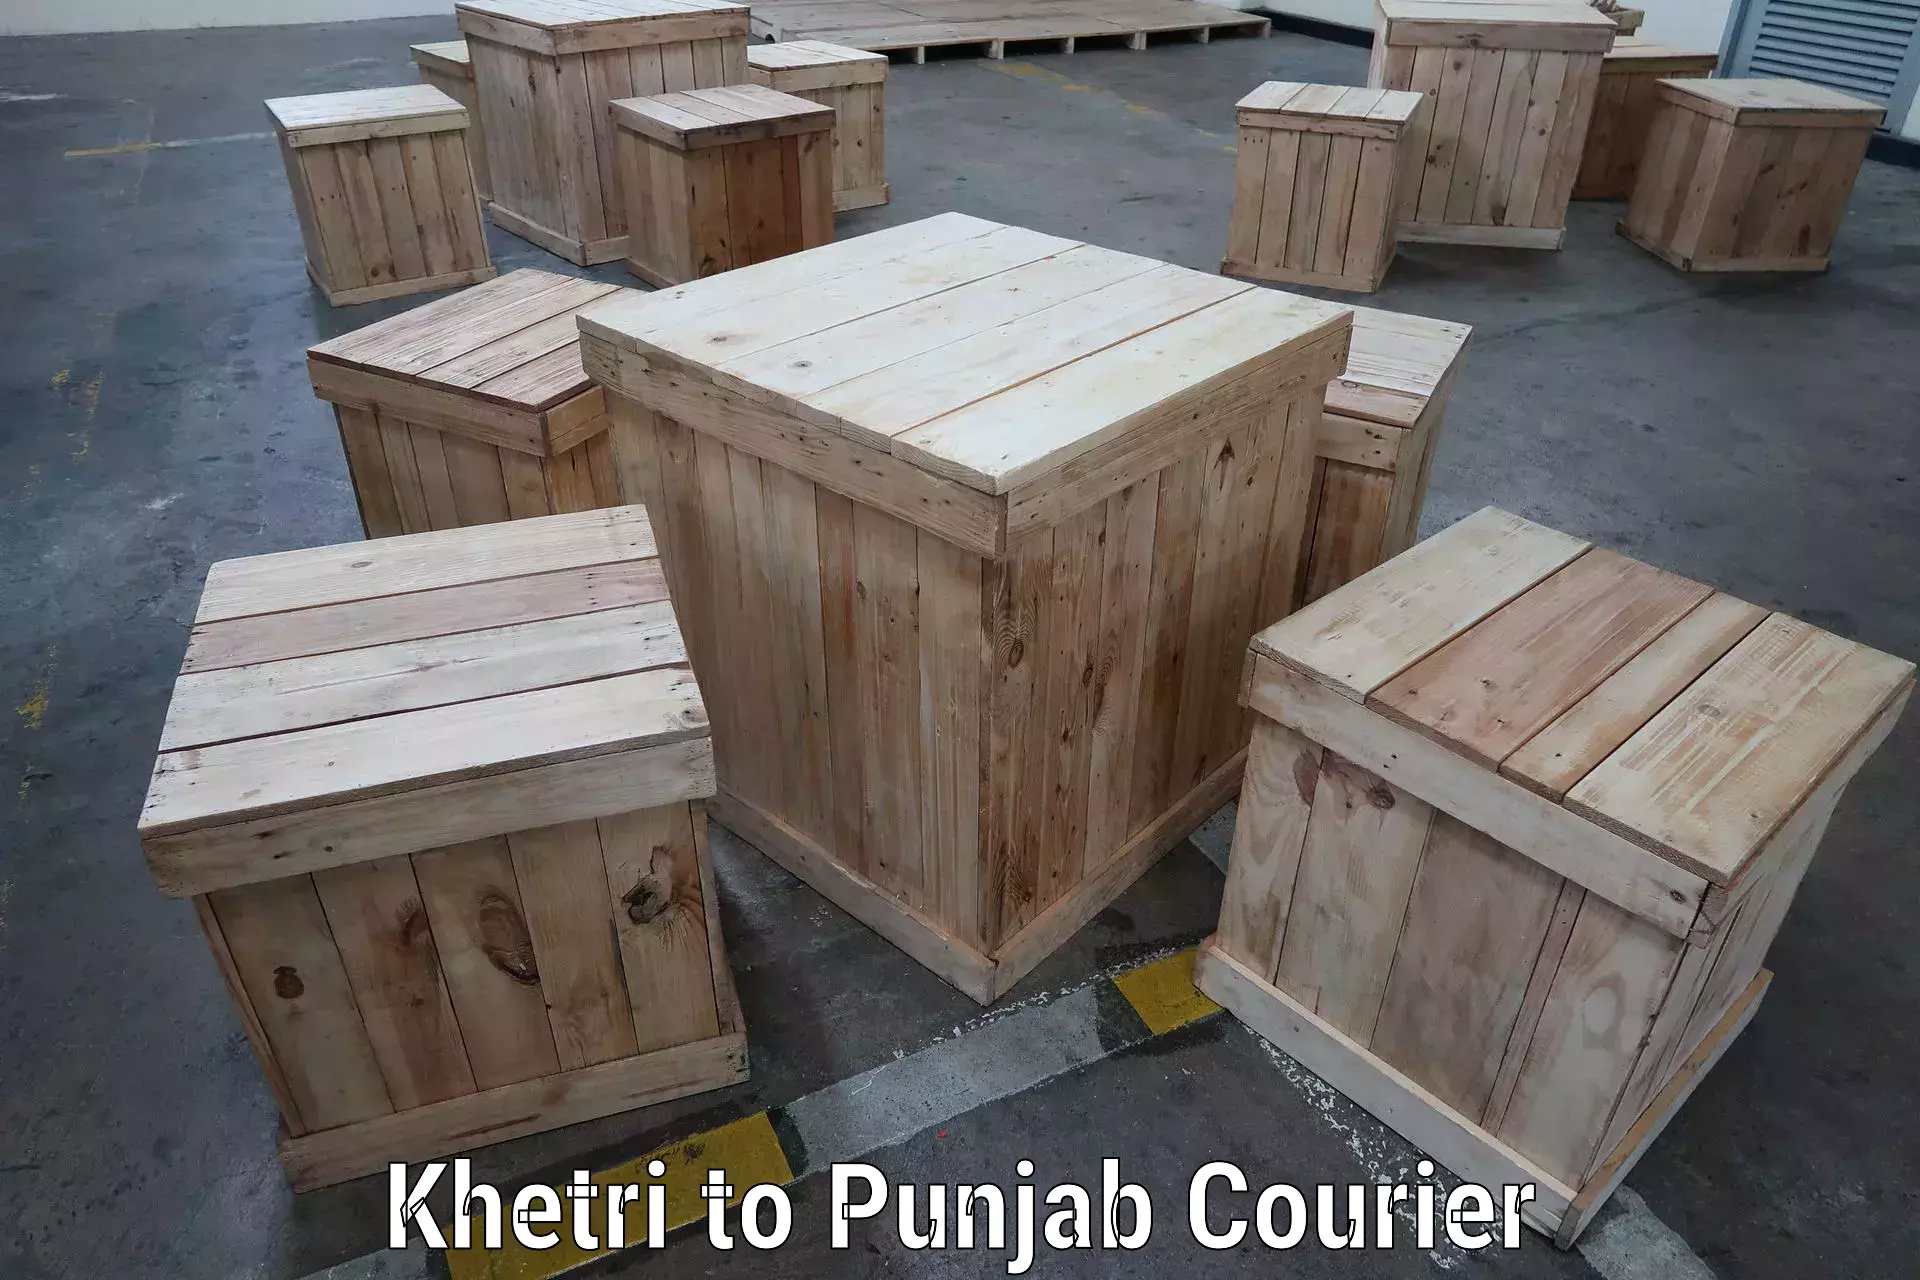 Affordable shipping rates Khetri to Amritsar